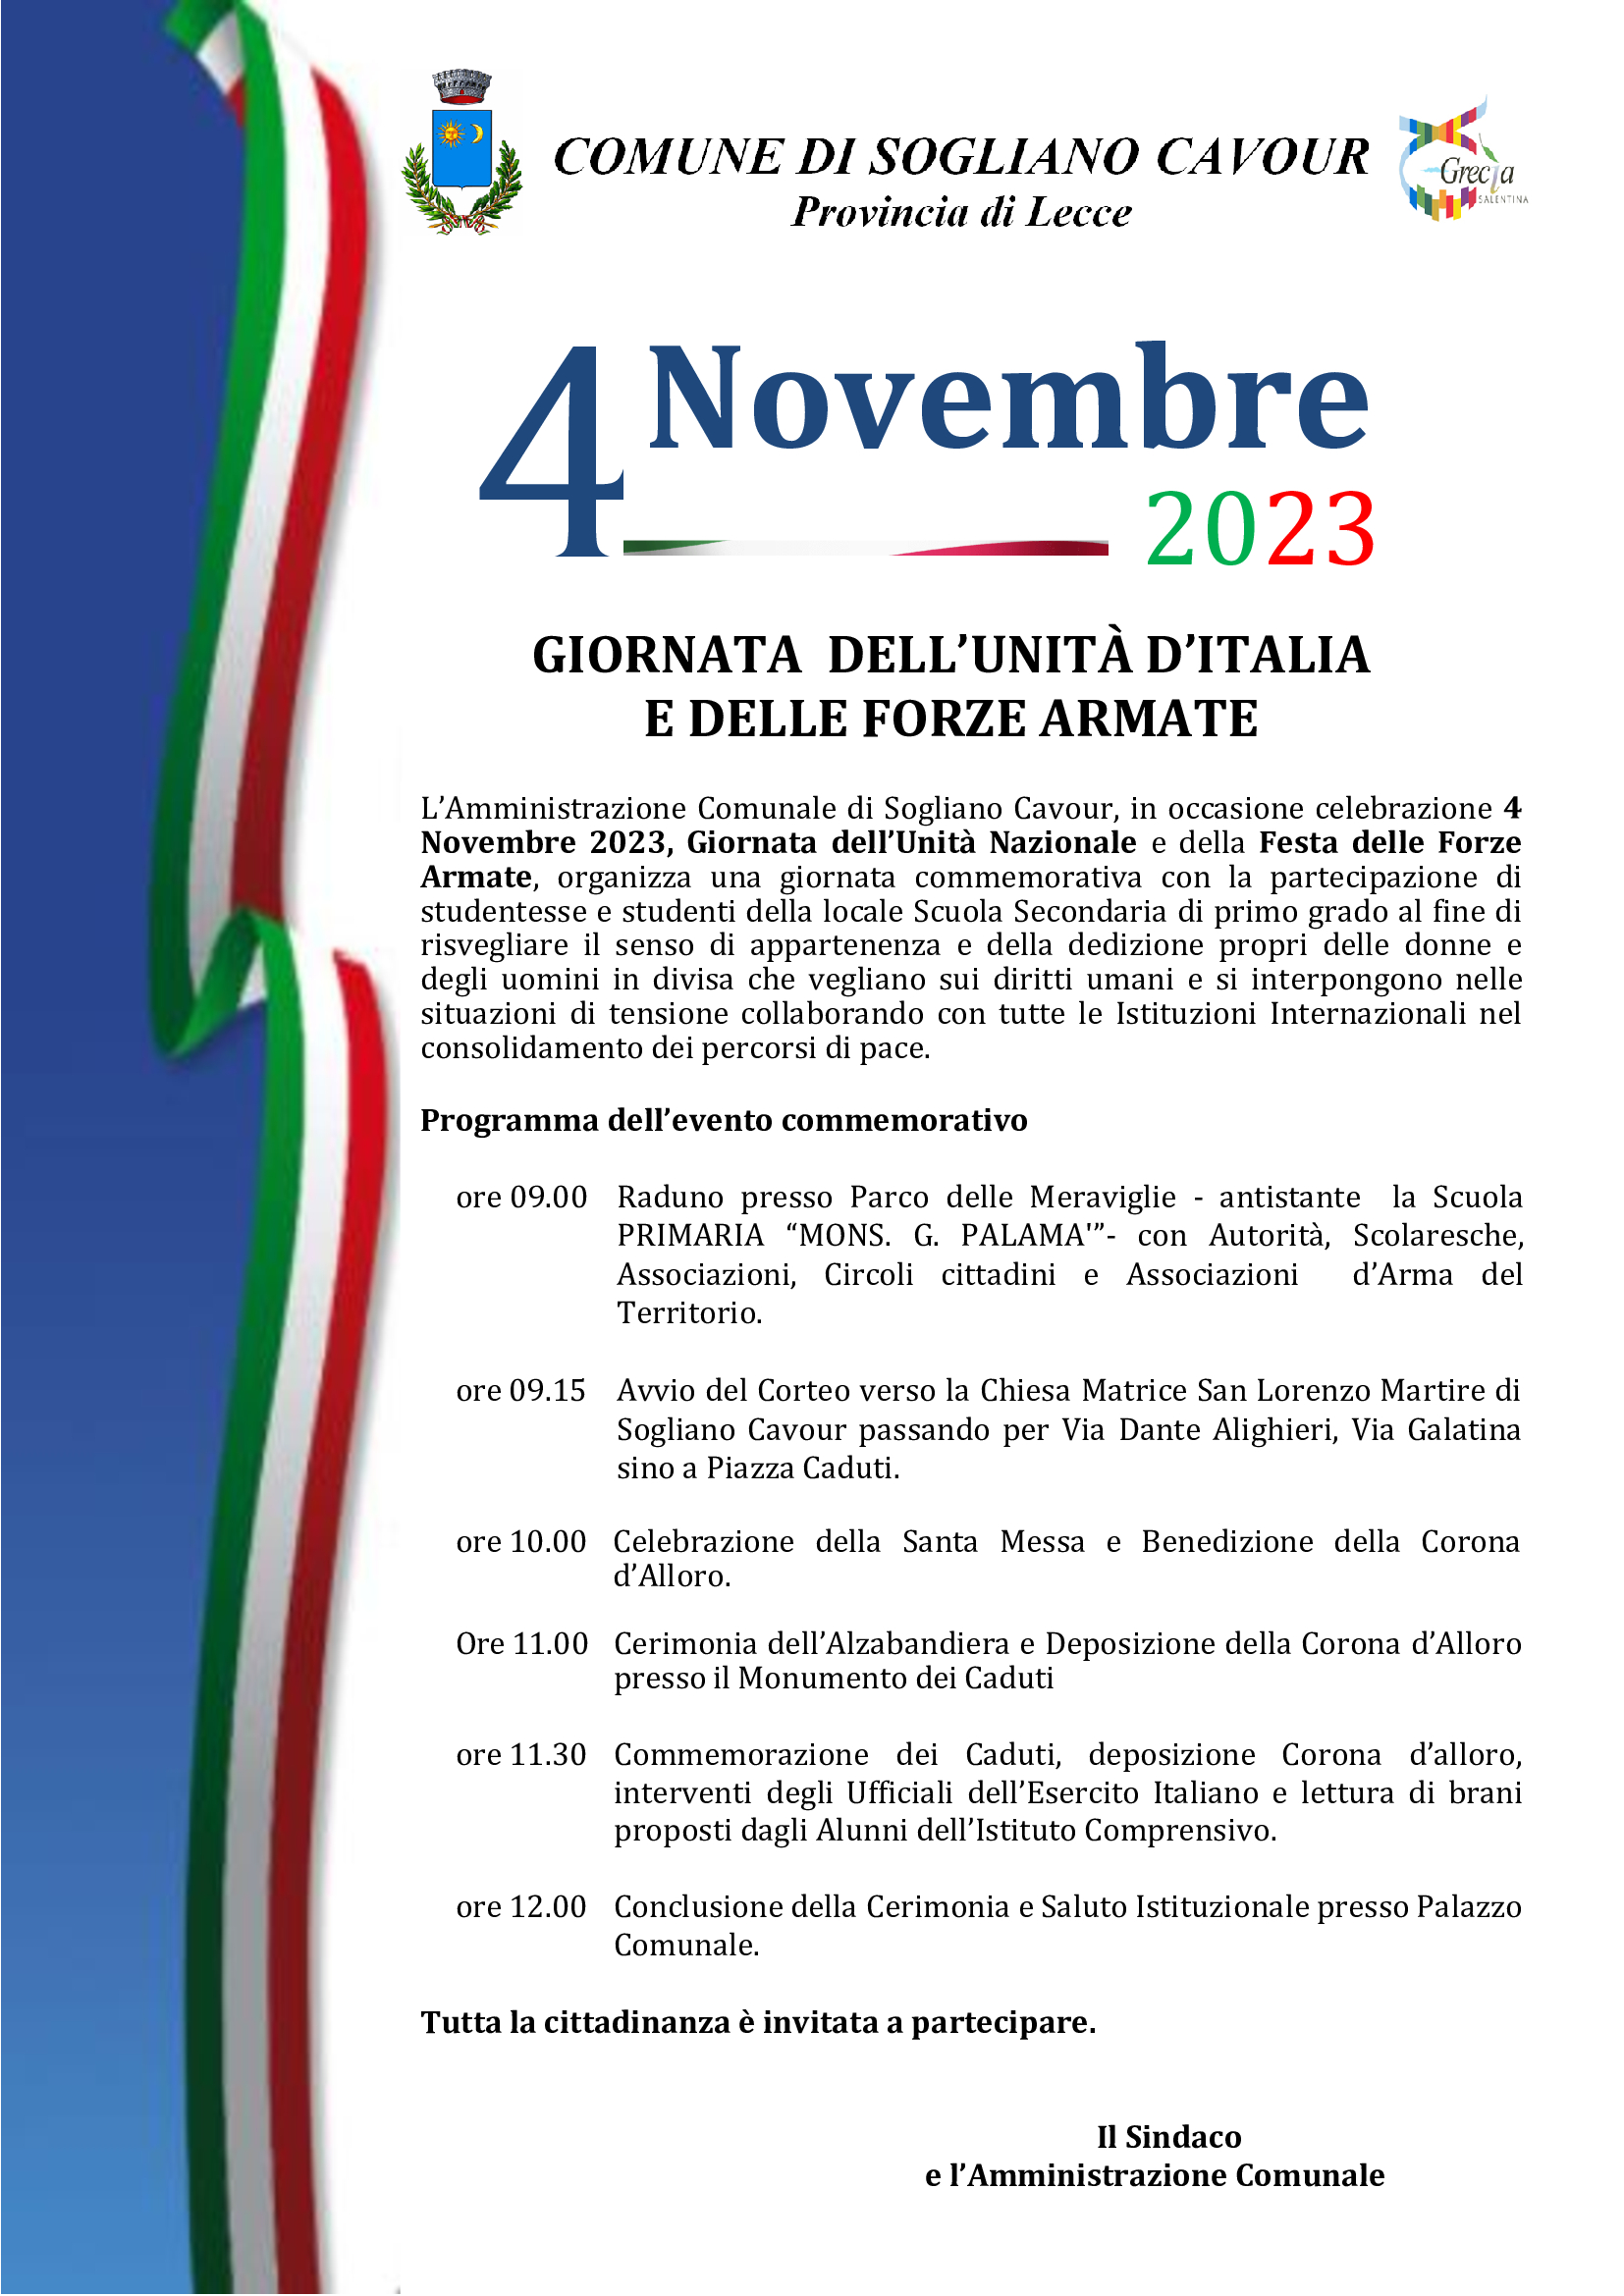 4 NOVEMBRE 2023 - GIORNATA DELL'UNITA' D'ITALIA E DELLE FORZE ARMATE